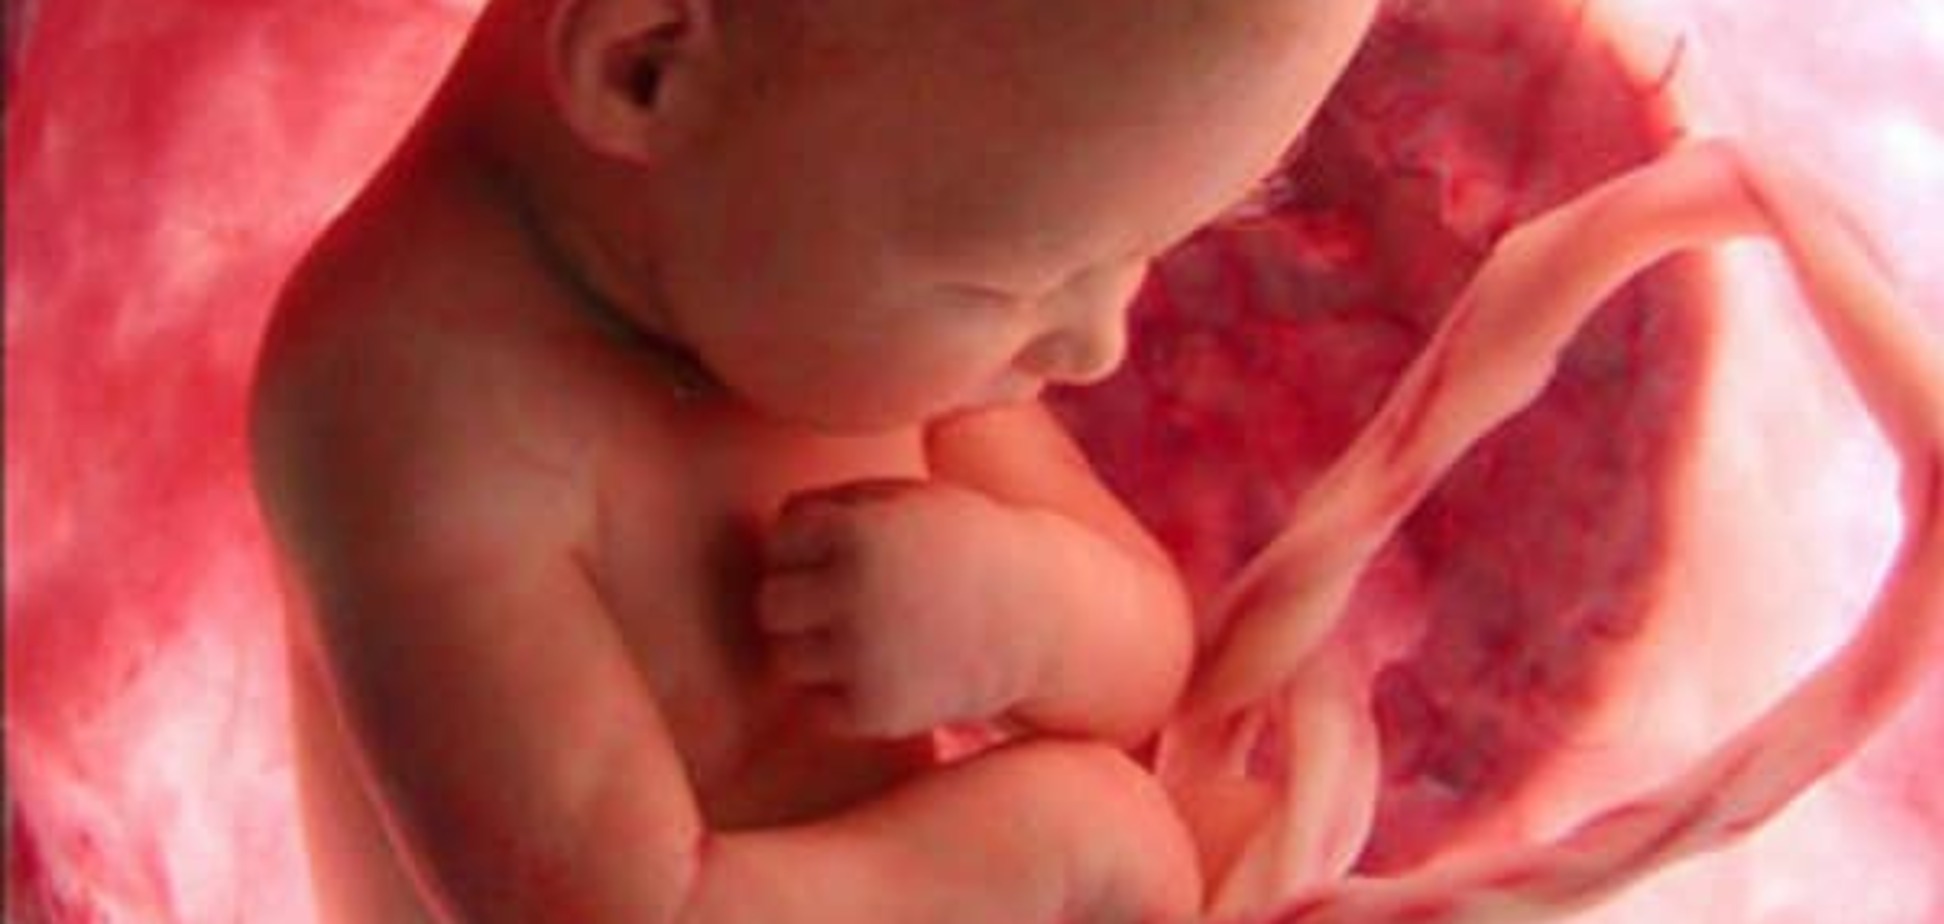 Генетическая аномалия: в США нерожденный ребенок стал отцом